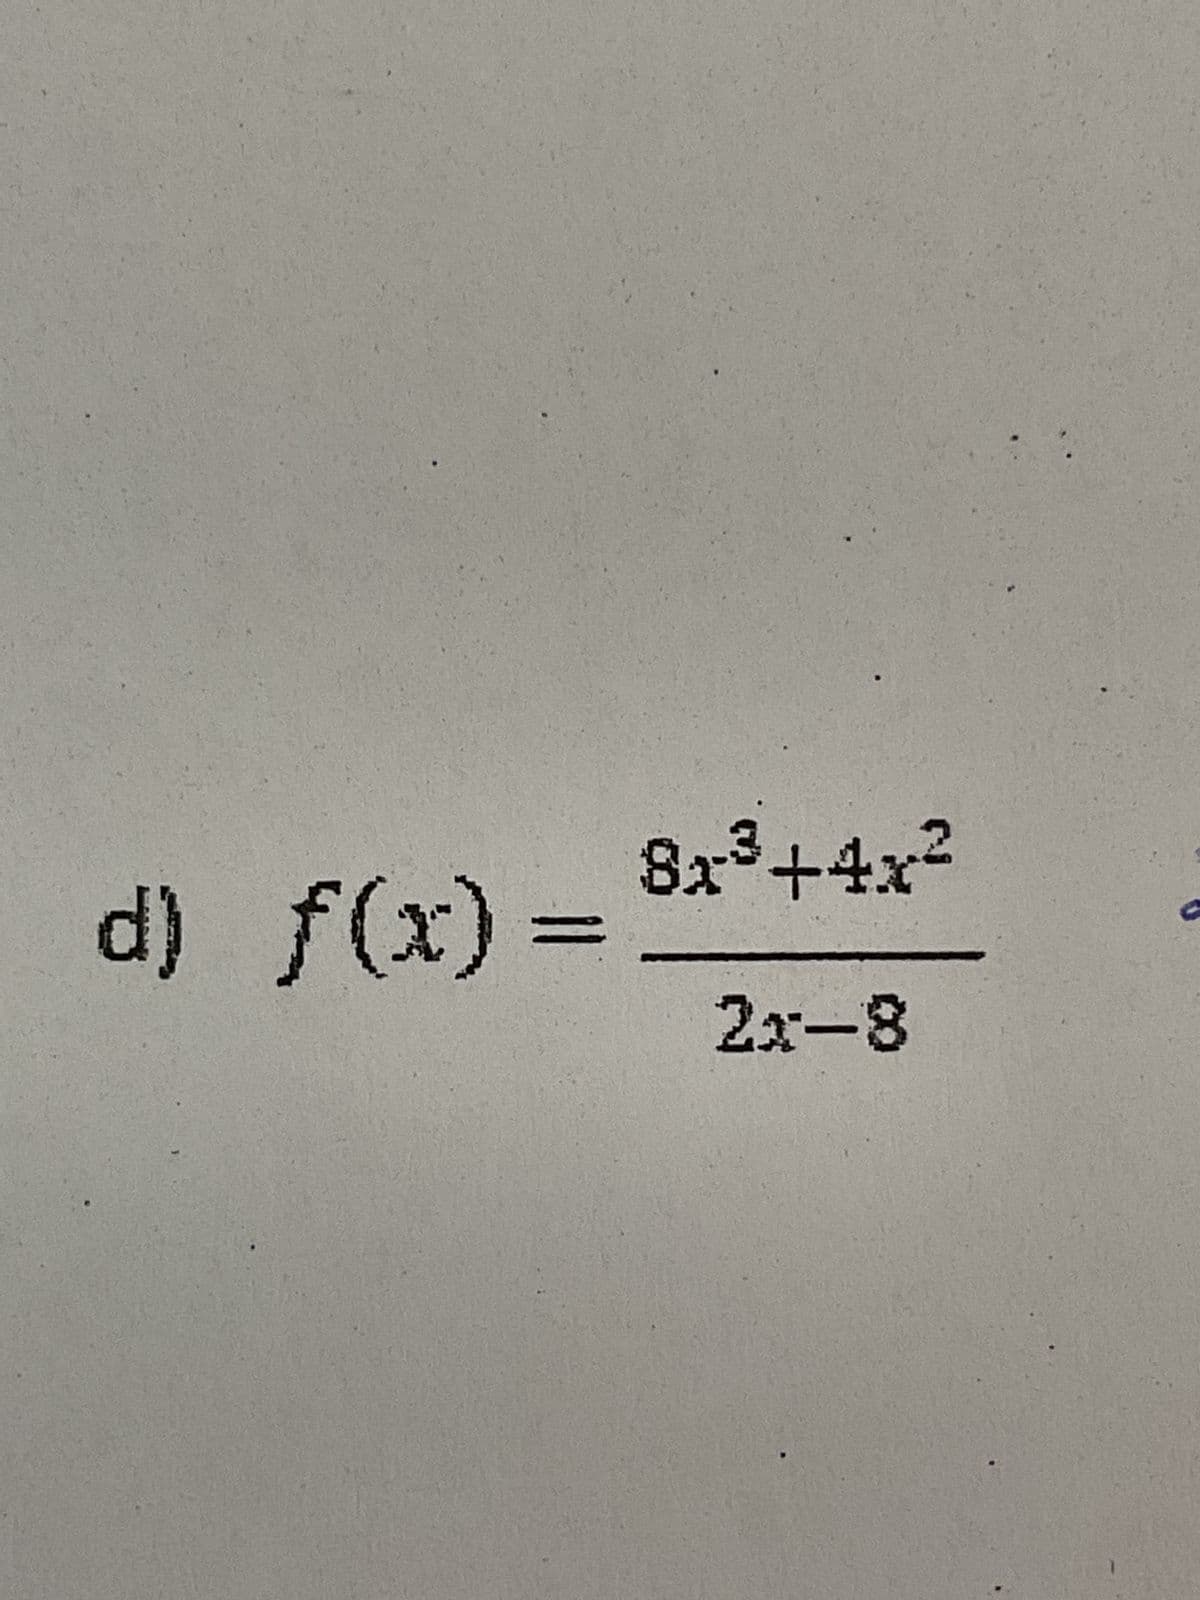 8x³+4x²
d) f(x) =
=
2x-8